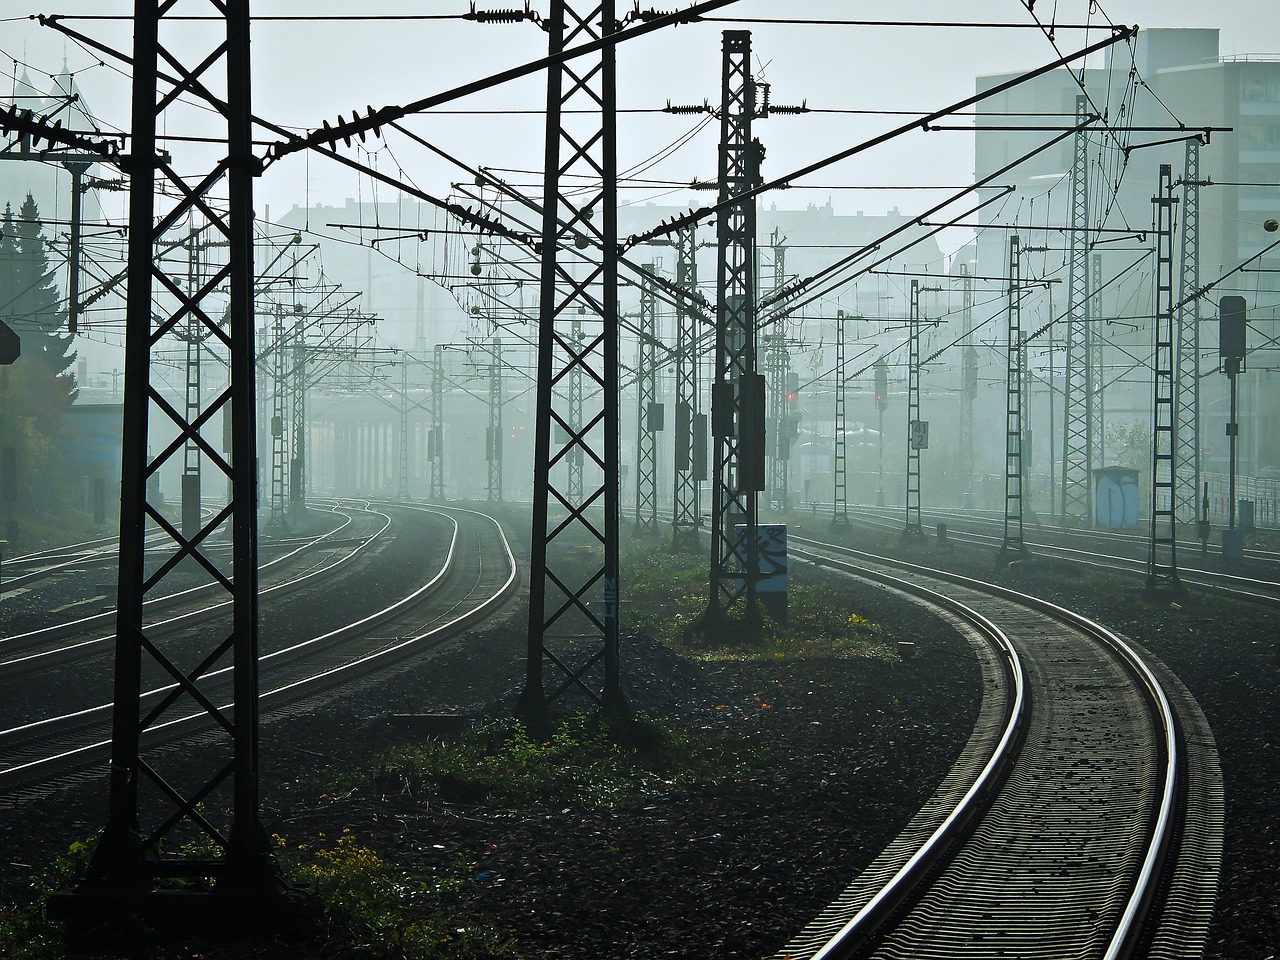 Σταϊκούρας: Το 2025 η πλήρης αποκατάσταση του σιδηροδρομικού δικτύου